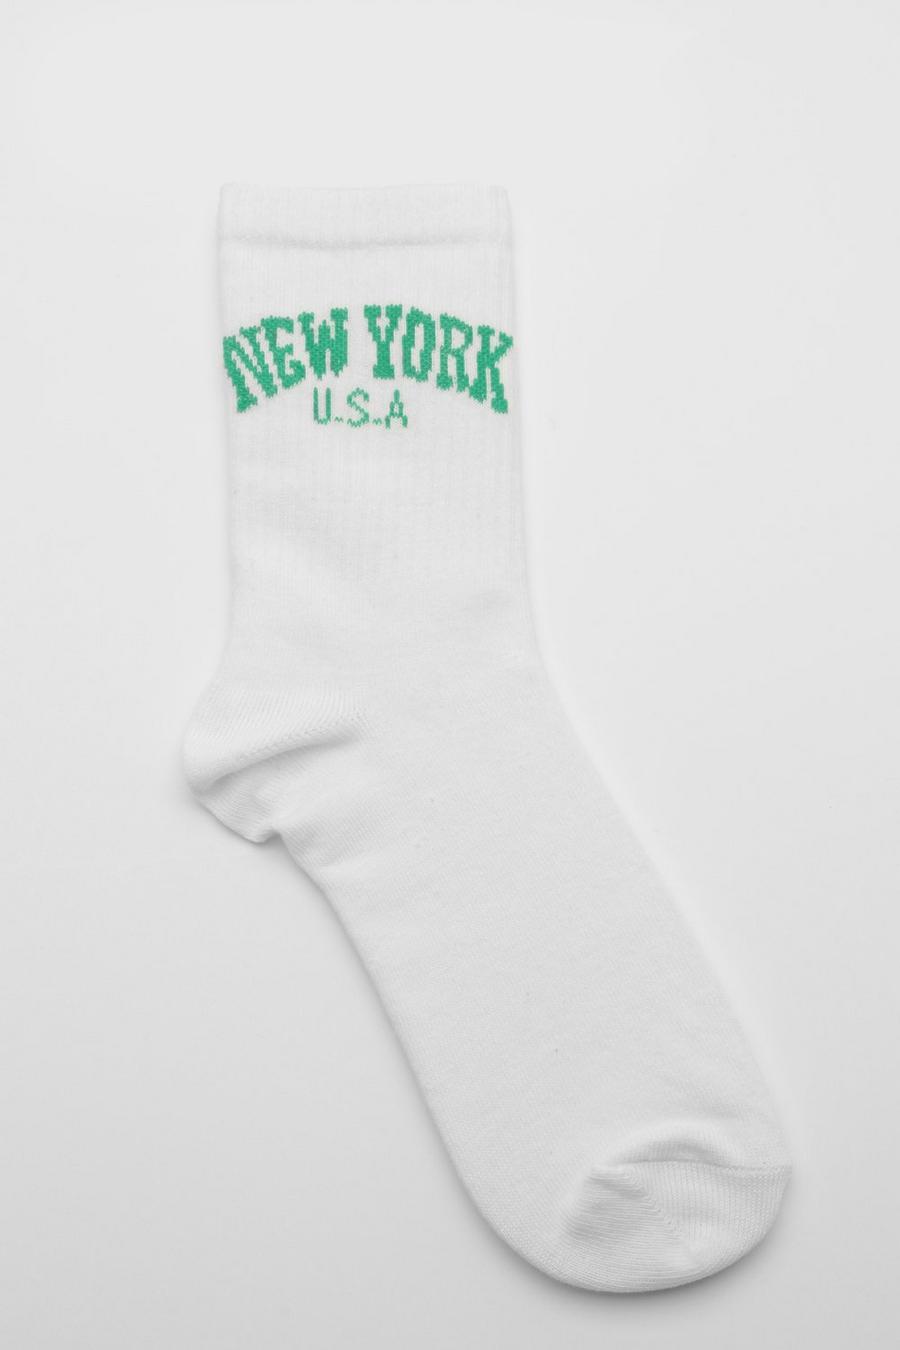 Chaussettes de sport à slogan New York, White blanc